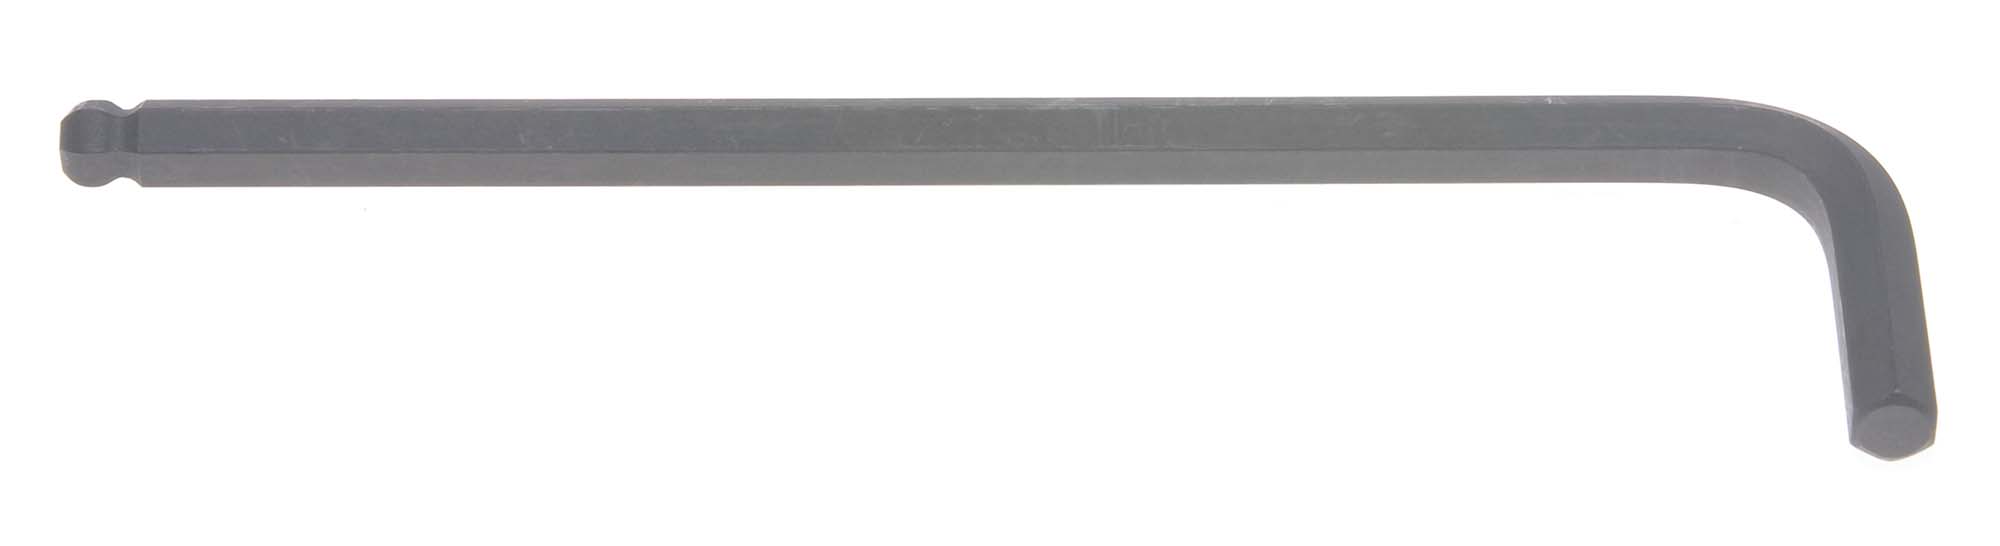 Bondhus 10958 3.5mm Balldriver L-Wrench Hex Key